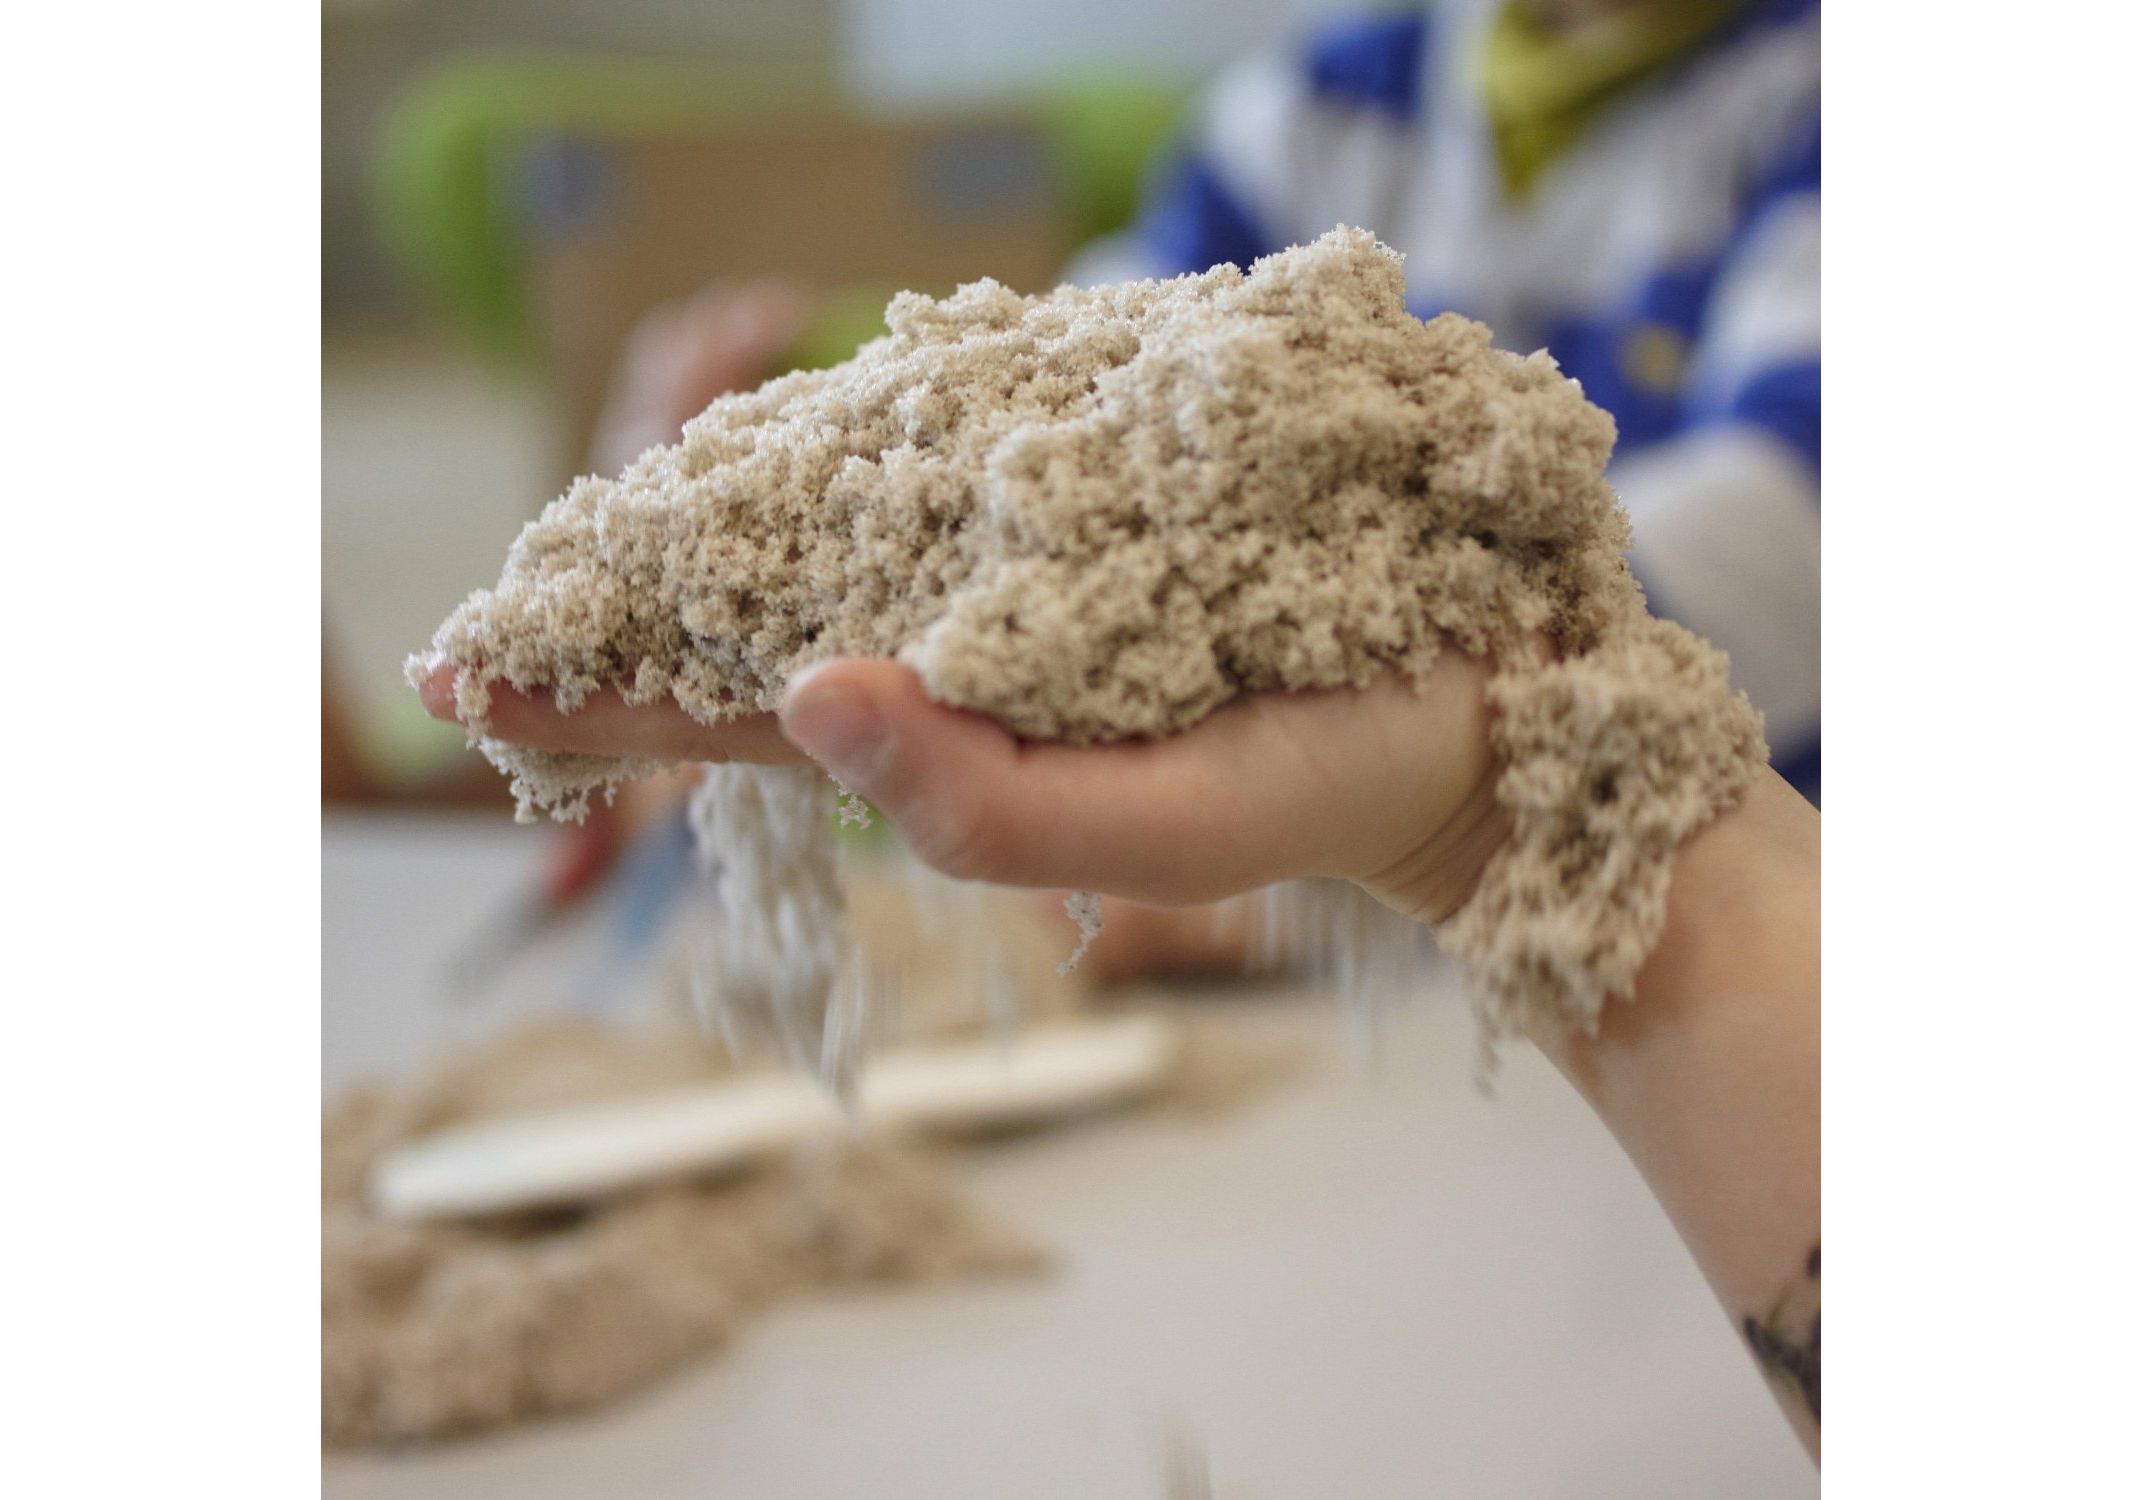 Как сделать кинетический: Как сделать кинетический песок своими руками